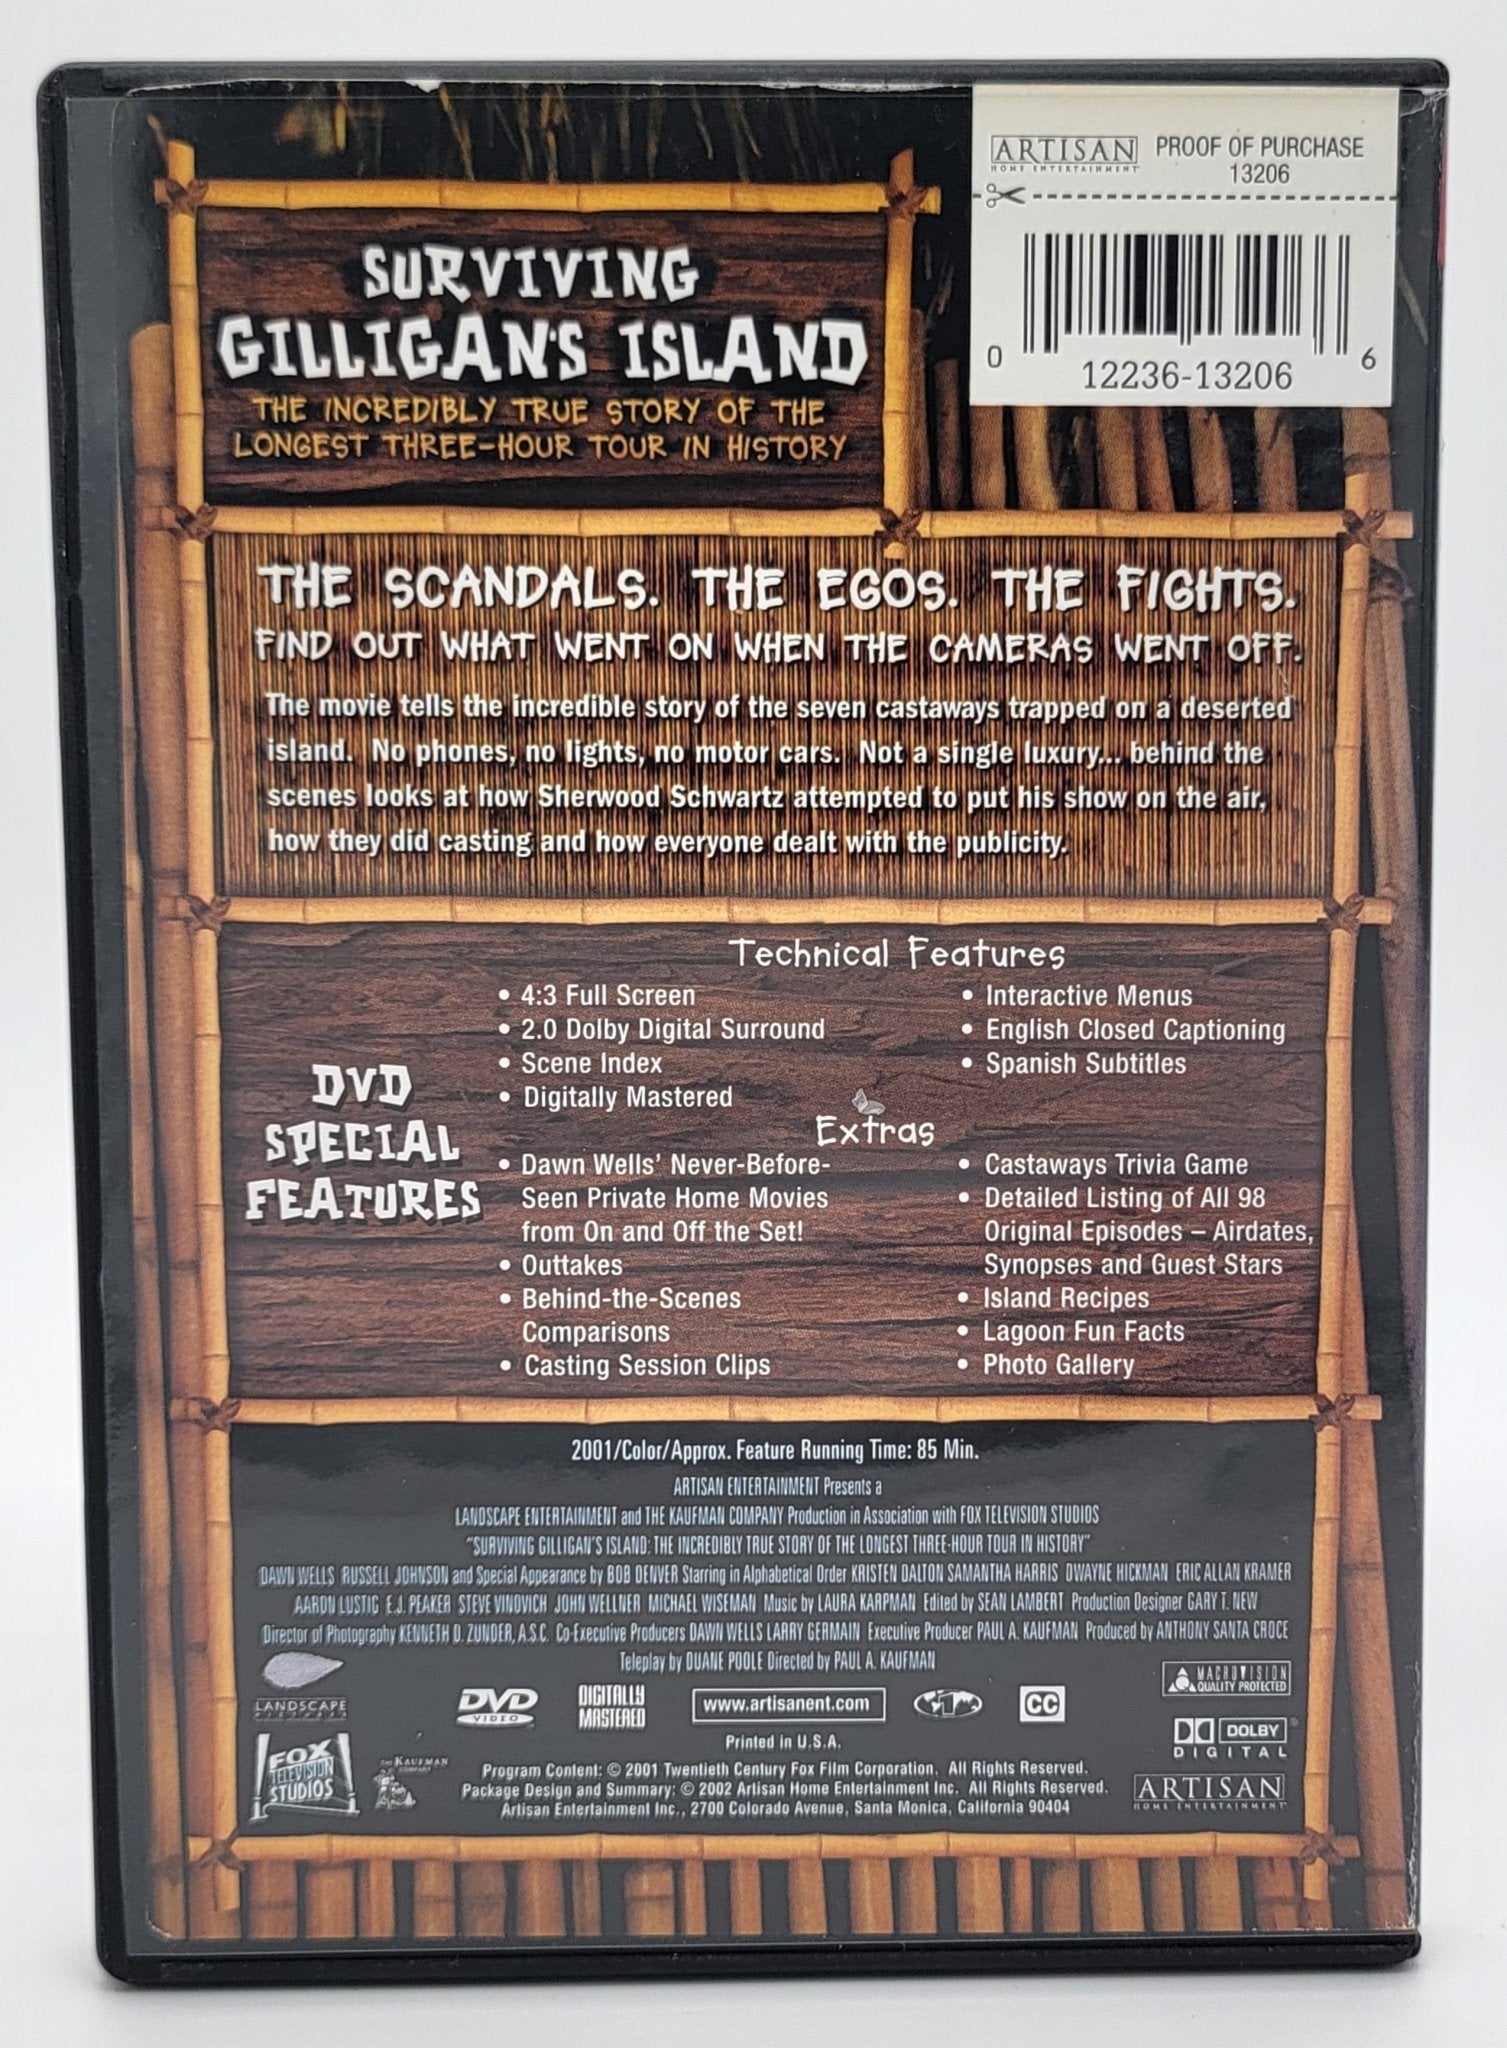 Artisan Home Entertainment - Surviving Gilligan's Island | DVD | Collector's Edition - DVD - Steady Bunny Shop